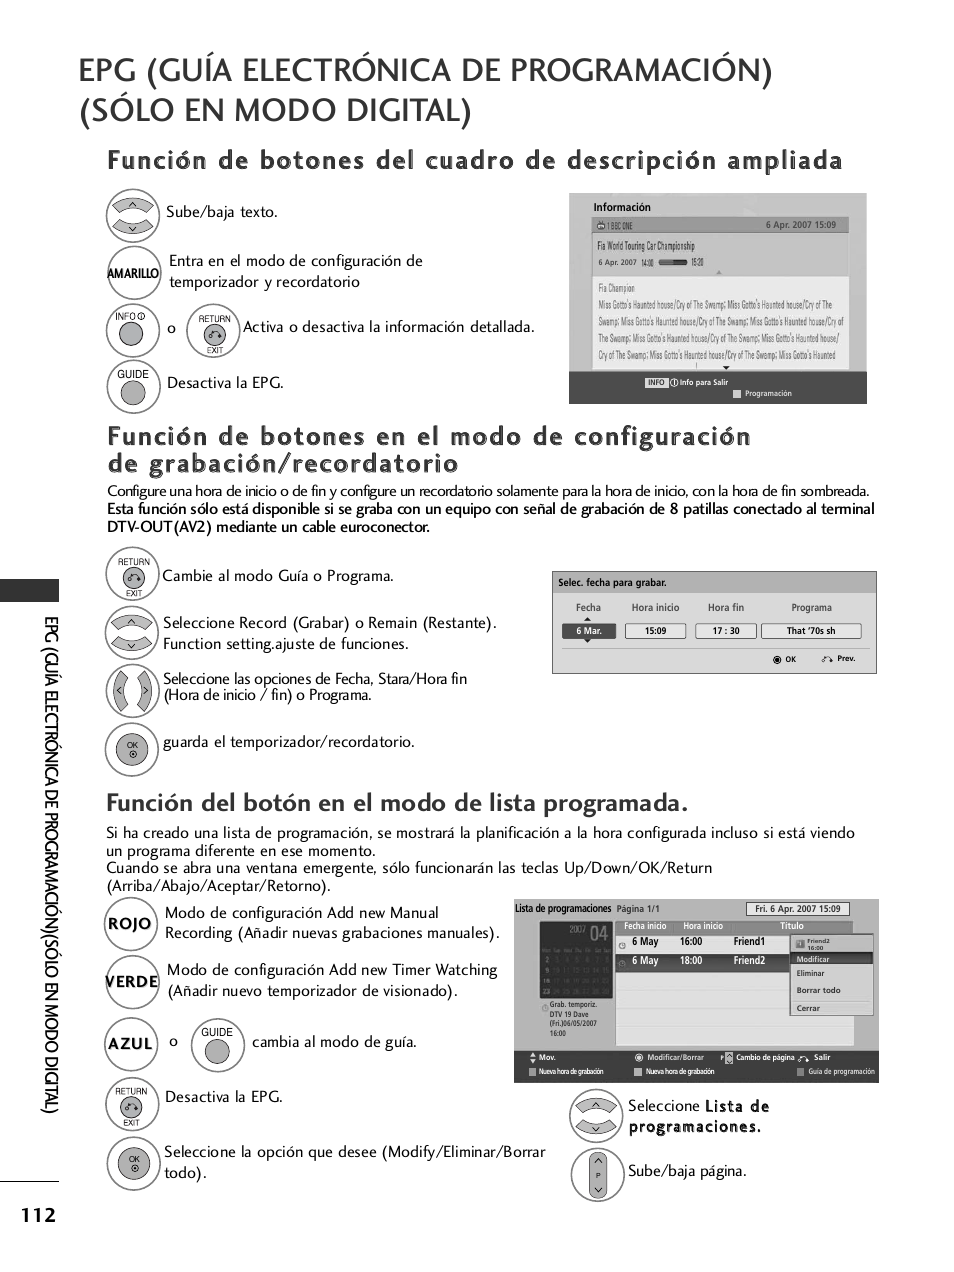 Función del botón en el modo de lista programada | LG 32LH40 Manual del usuario | Página 114 / 180